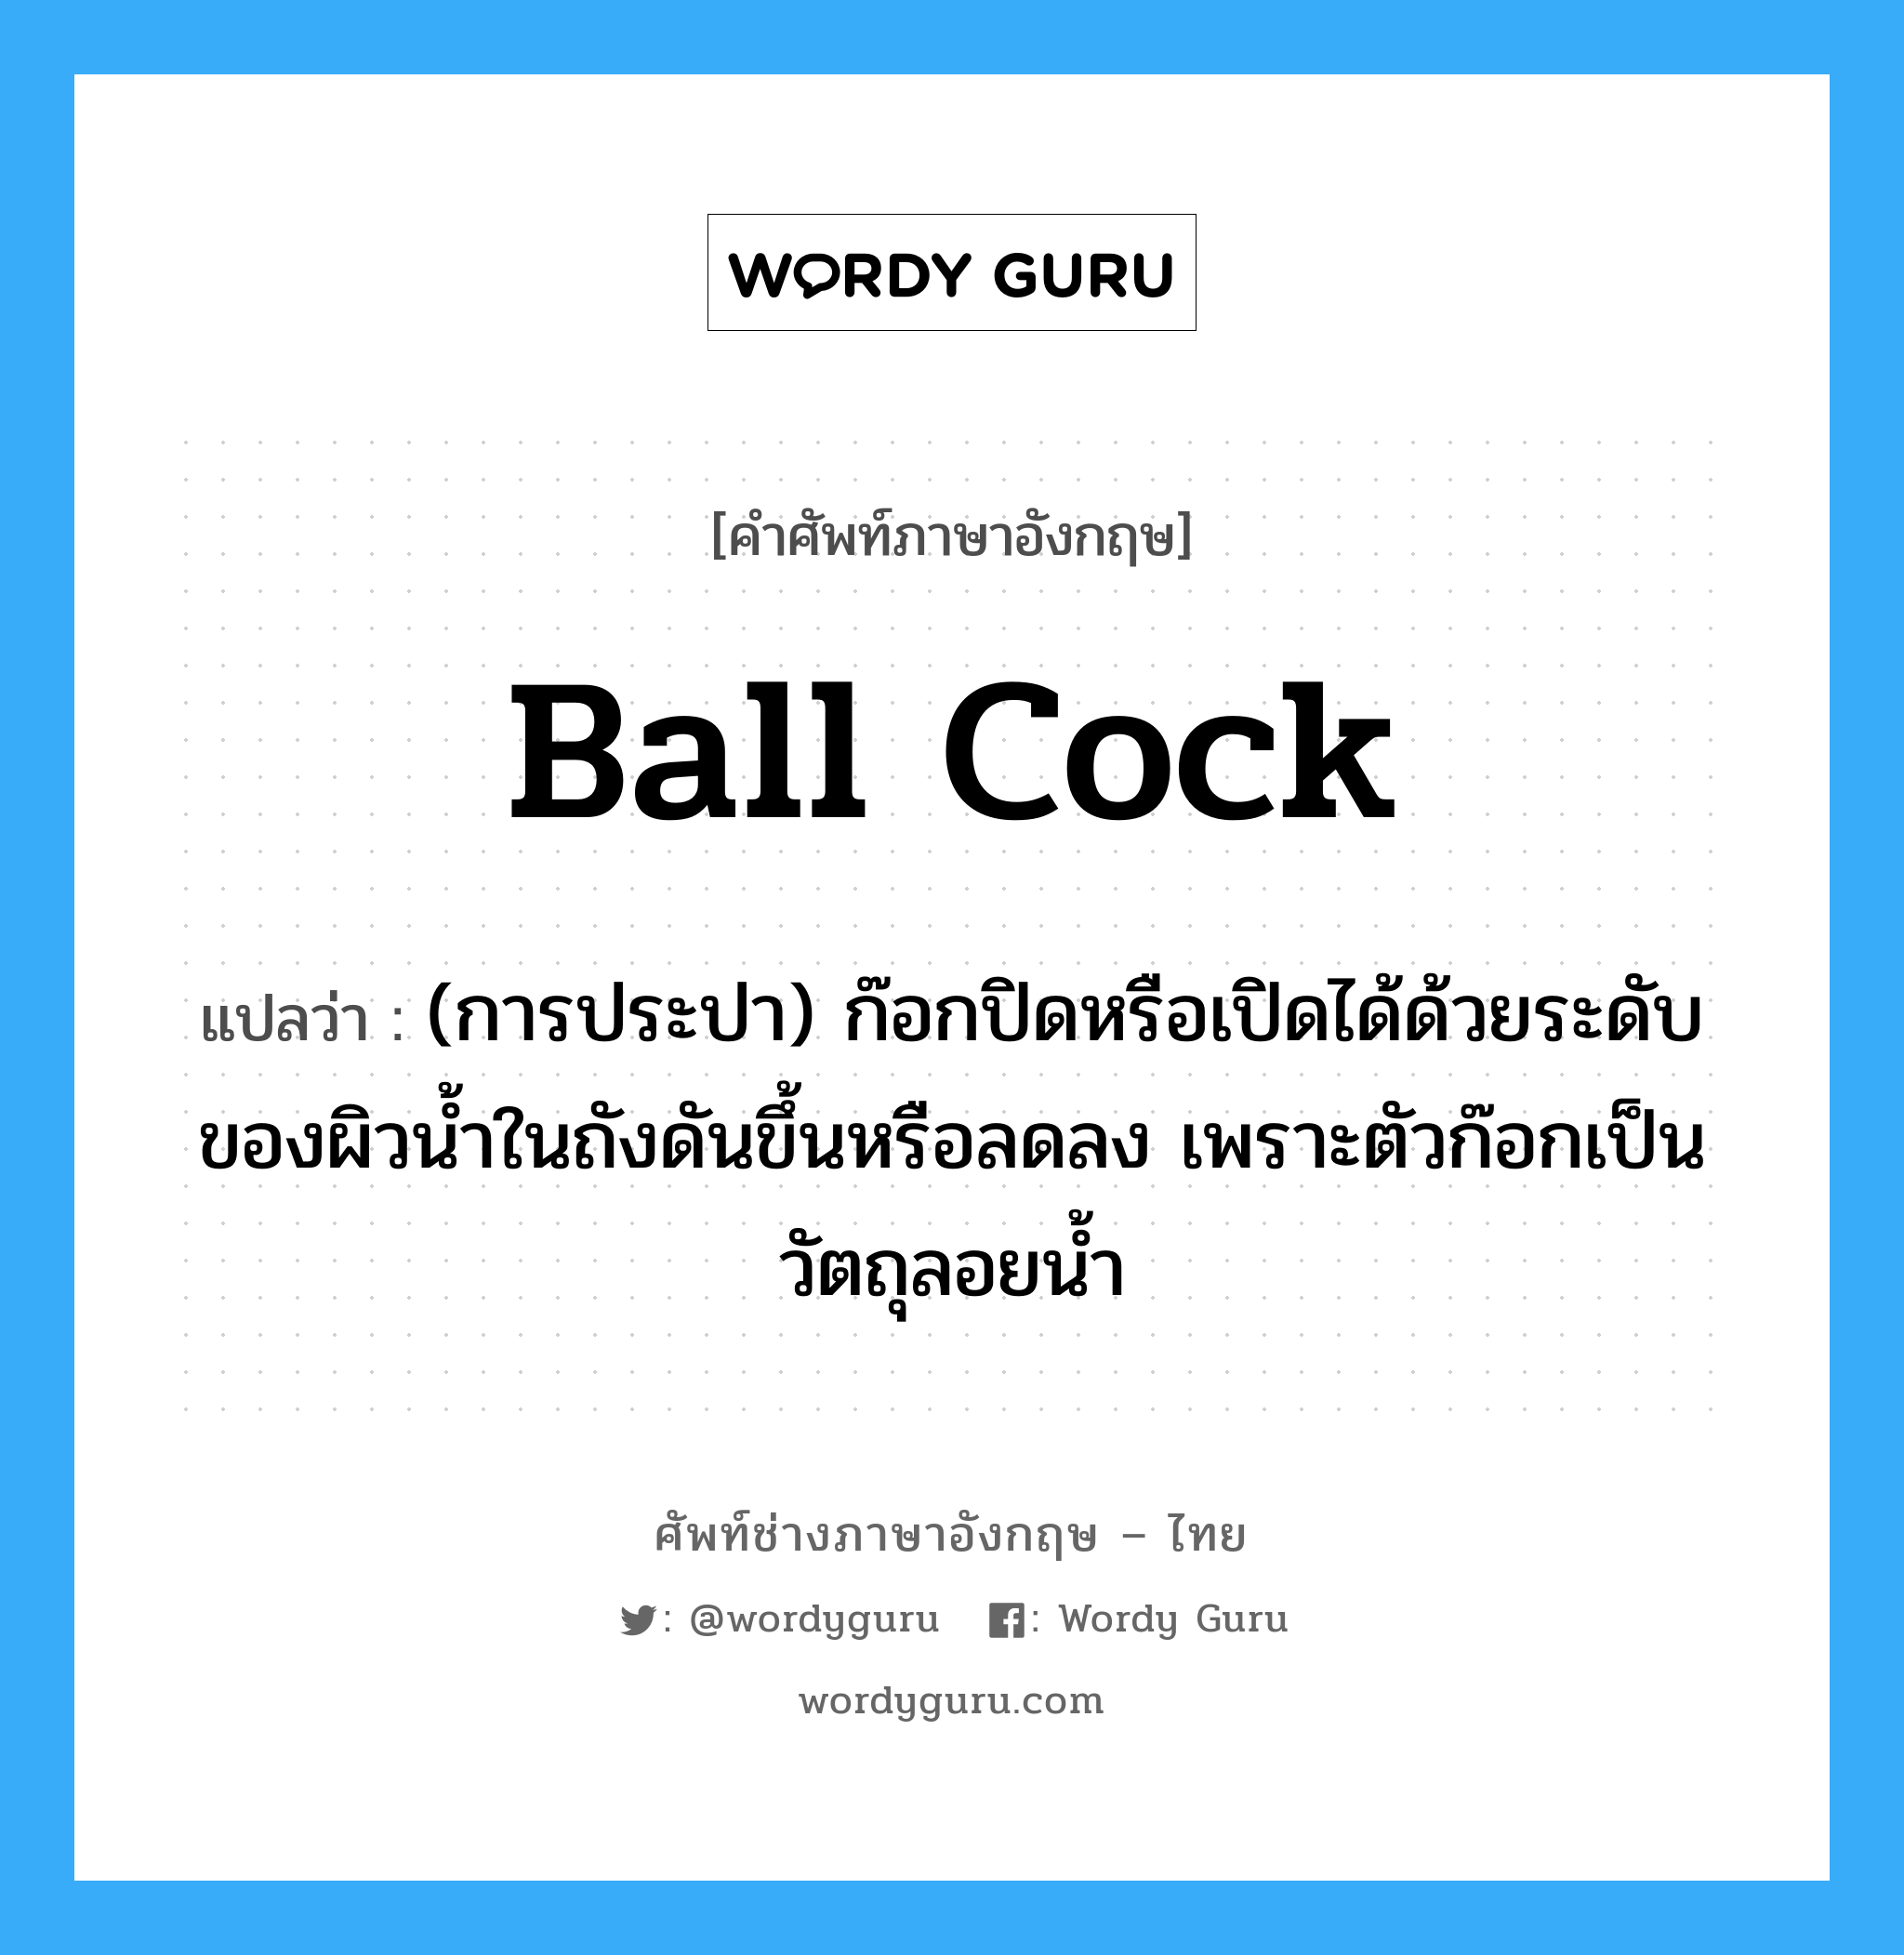 ball cock แปลว่า?, คำศัพท์ช่างภาษาอังกฤษ - ไทย ball cock คำศัพท์ภาษาอังกฤษ ball cock แปลว่า (การประปา) ก๊อกปิดหรือเปิดได้ด้วยระดับของผิวน้ำในถังดันขึ้นหรือลดลง เพราะตัวก๊อกเป็นวัตถุลอยน้ำ